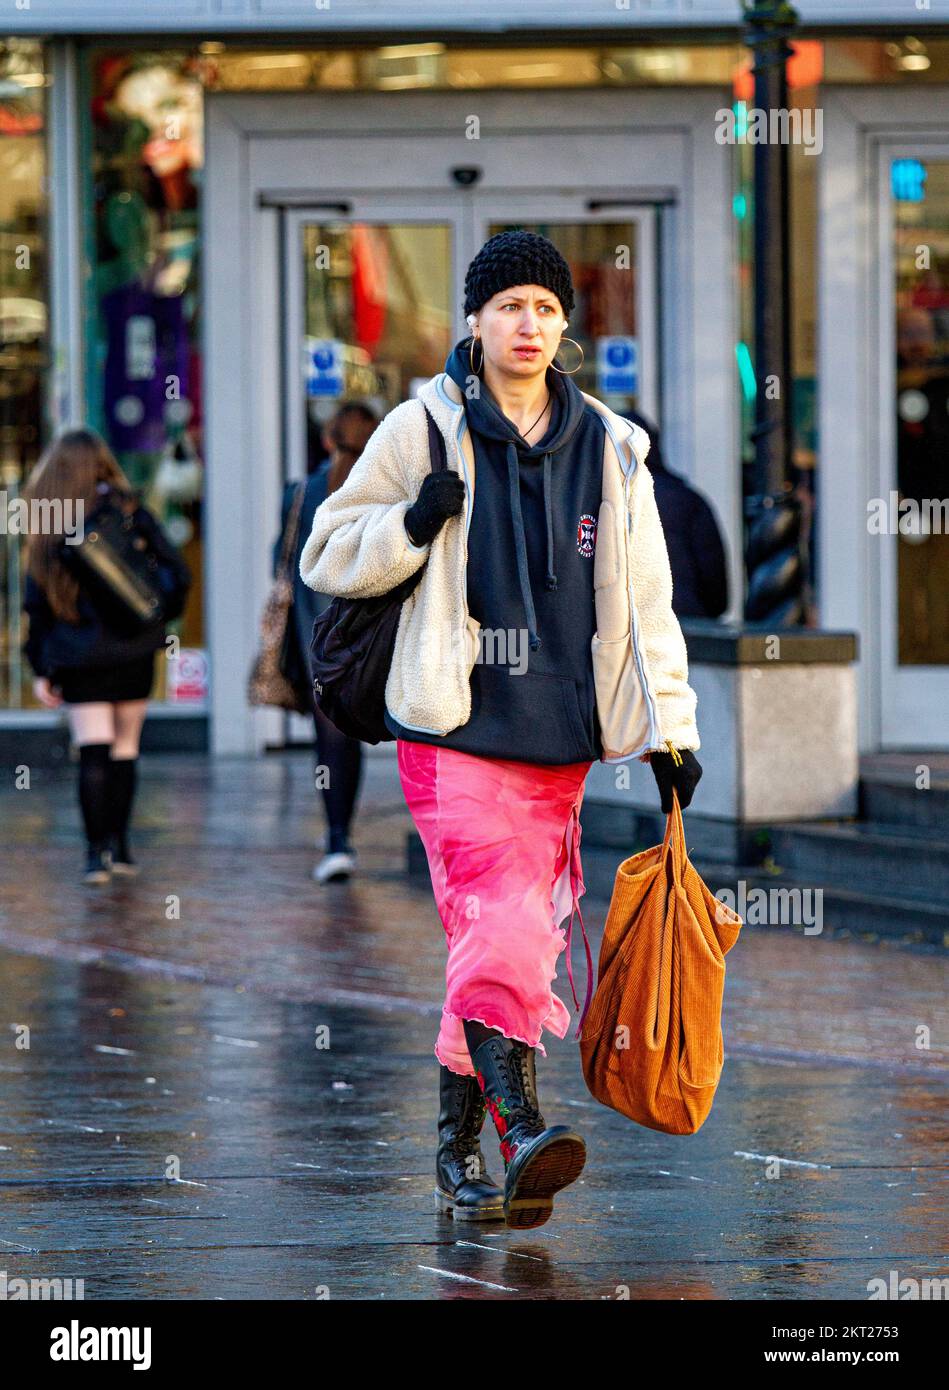 Dundee, Tayside, Écosse, Royaume-Uni. 29th novembre 2022. Météo au Royaume-Uni : les températures dans le nord-est de l'Écosse ont atteint 6°C le jour de novembre, froid et ensoleillé. En dépit de la réalité, l'inflation est à un niveau élevé de 41 ans de 11,1%, les gens sortent sur leur vie quotidienne et se précipitent dans les boutiques du centre-ville de Dundee à la recherche de ventes d'hiver. Crédit : Dundee Photographics/Alamy Live News Banque D'Images